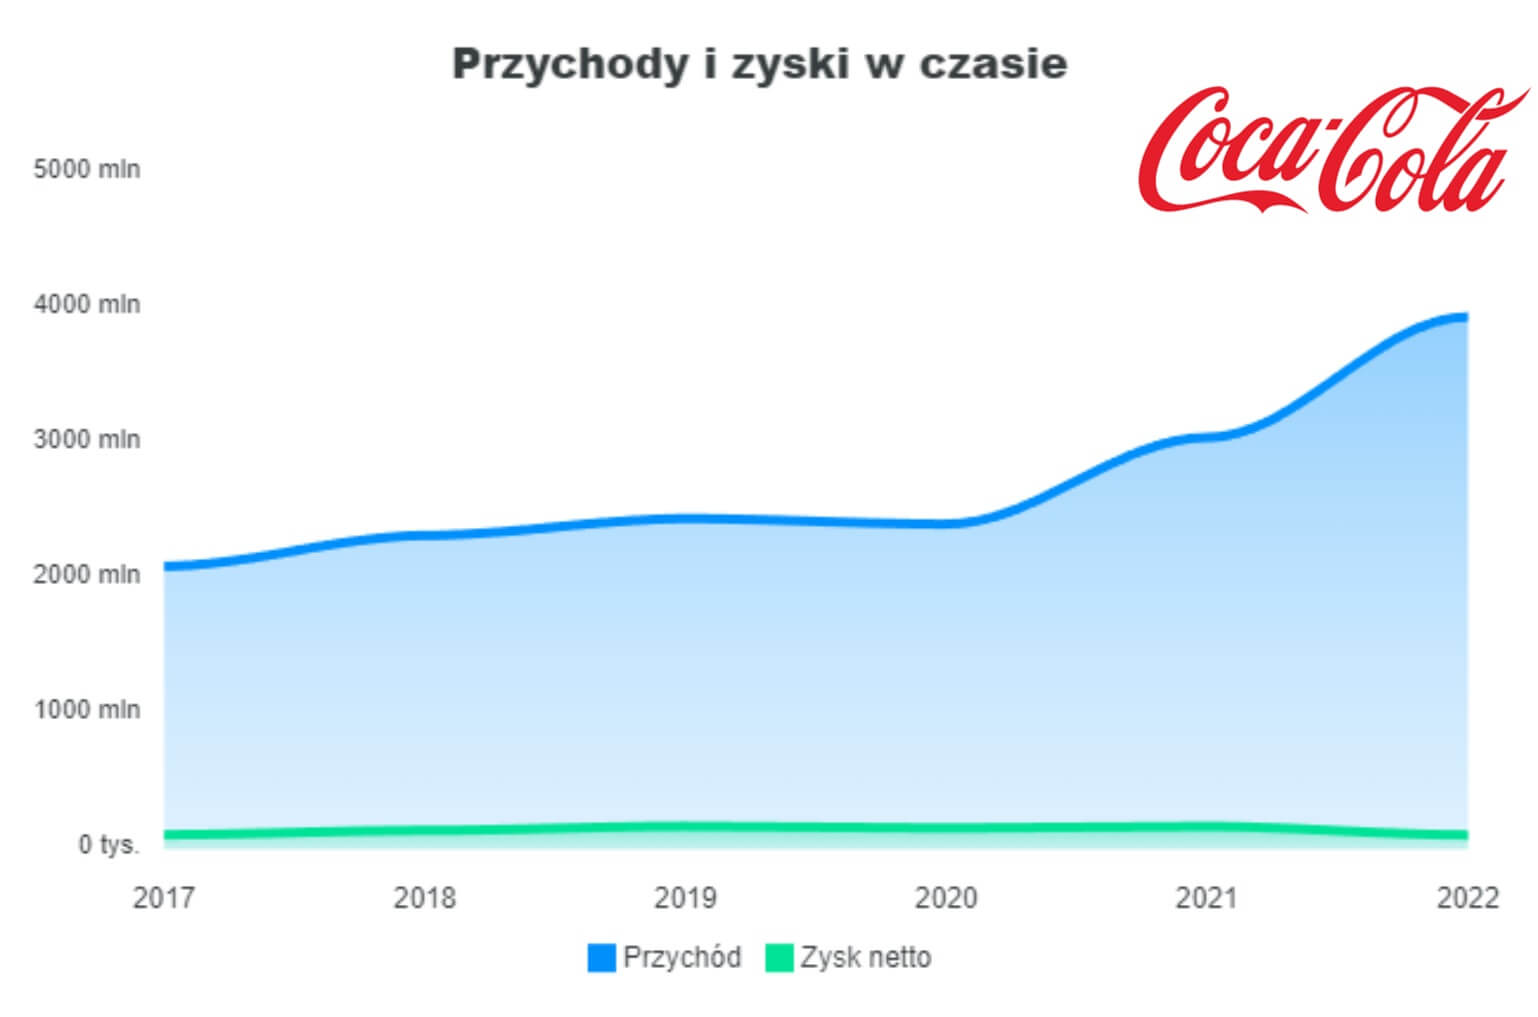 Coca cola a podatek cukrowy - wzrost przychodów